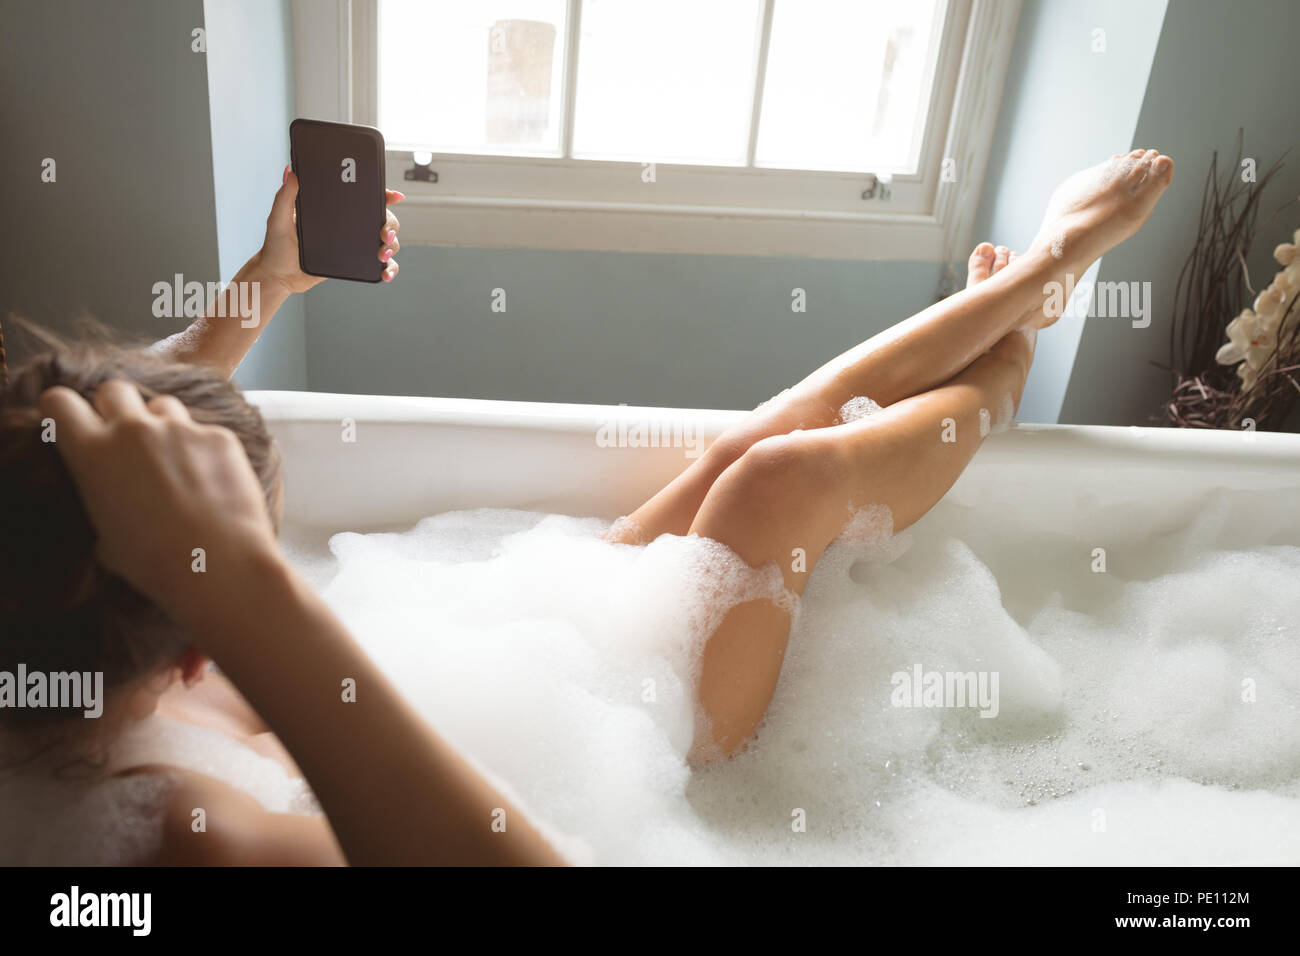 Девушка с упругой грудью и волосатой писей принимает ванну фото